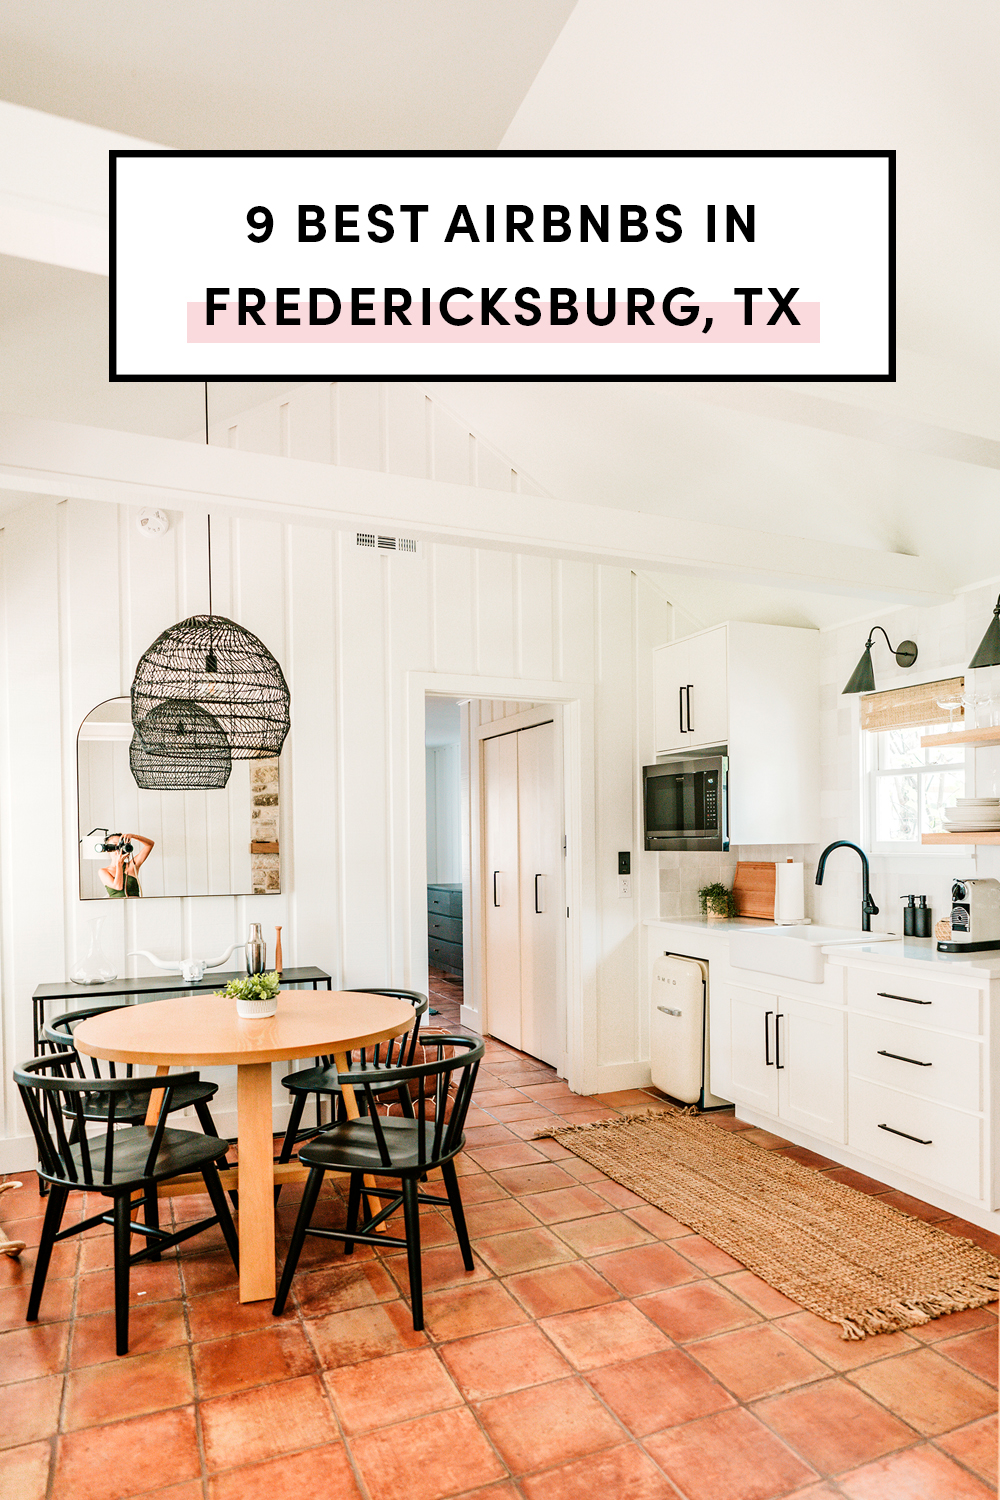 9 Best Airbnbs & Vrbos, & bed & breakfast (bnbs) in Fredericksburg Texas